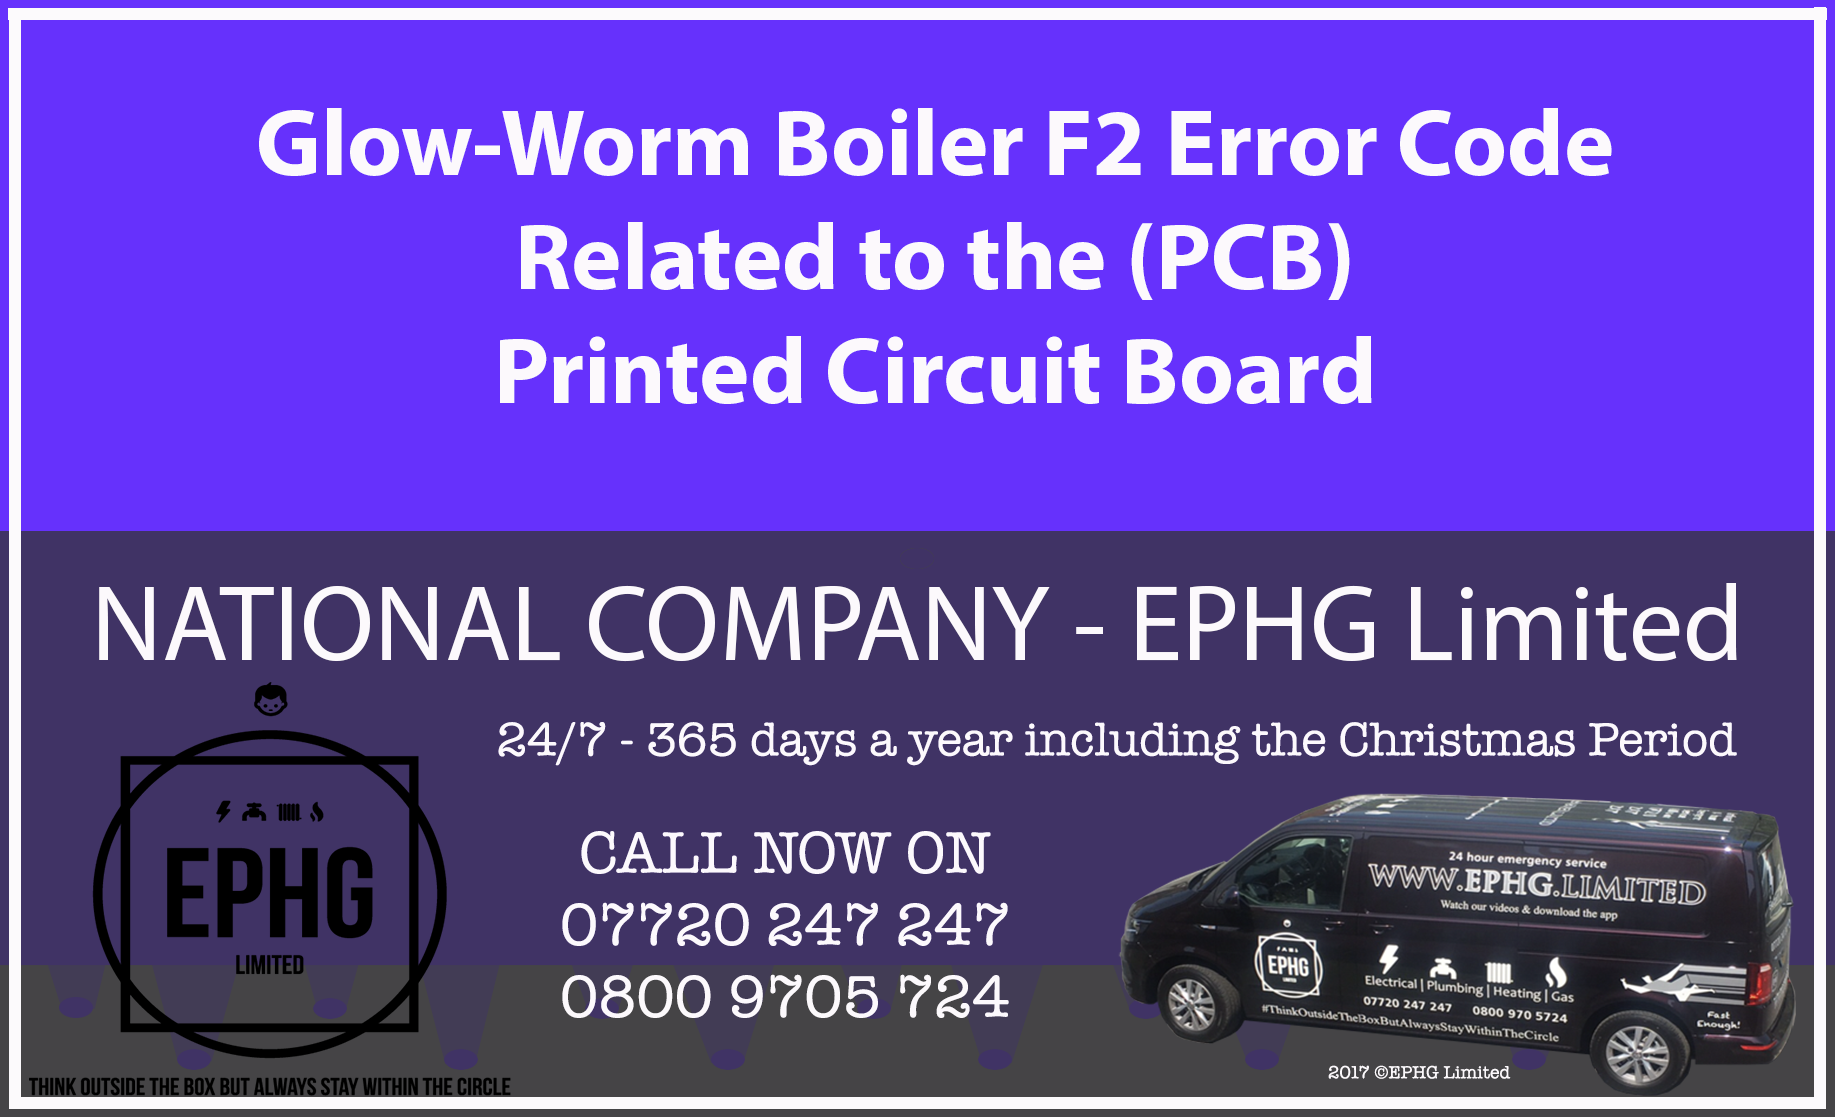 Glow-Worm boiler error code F2